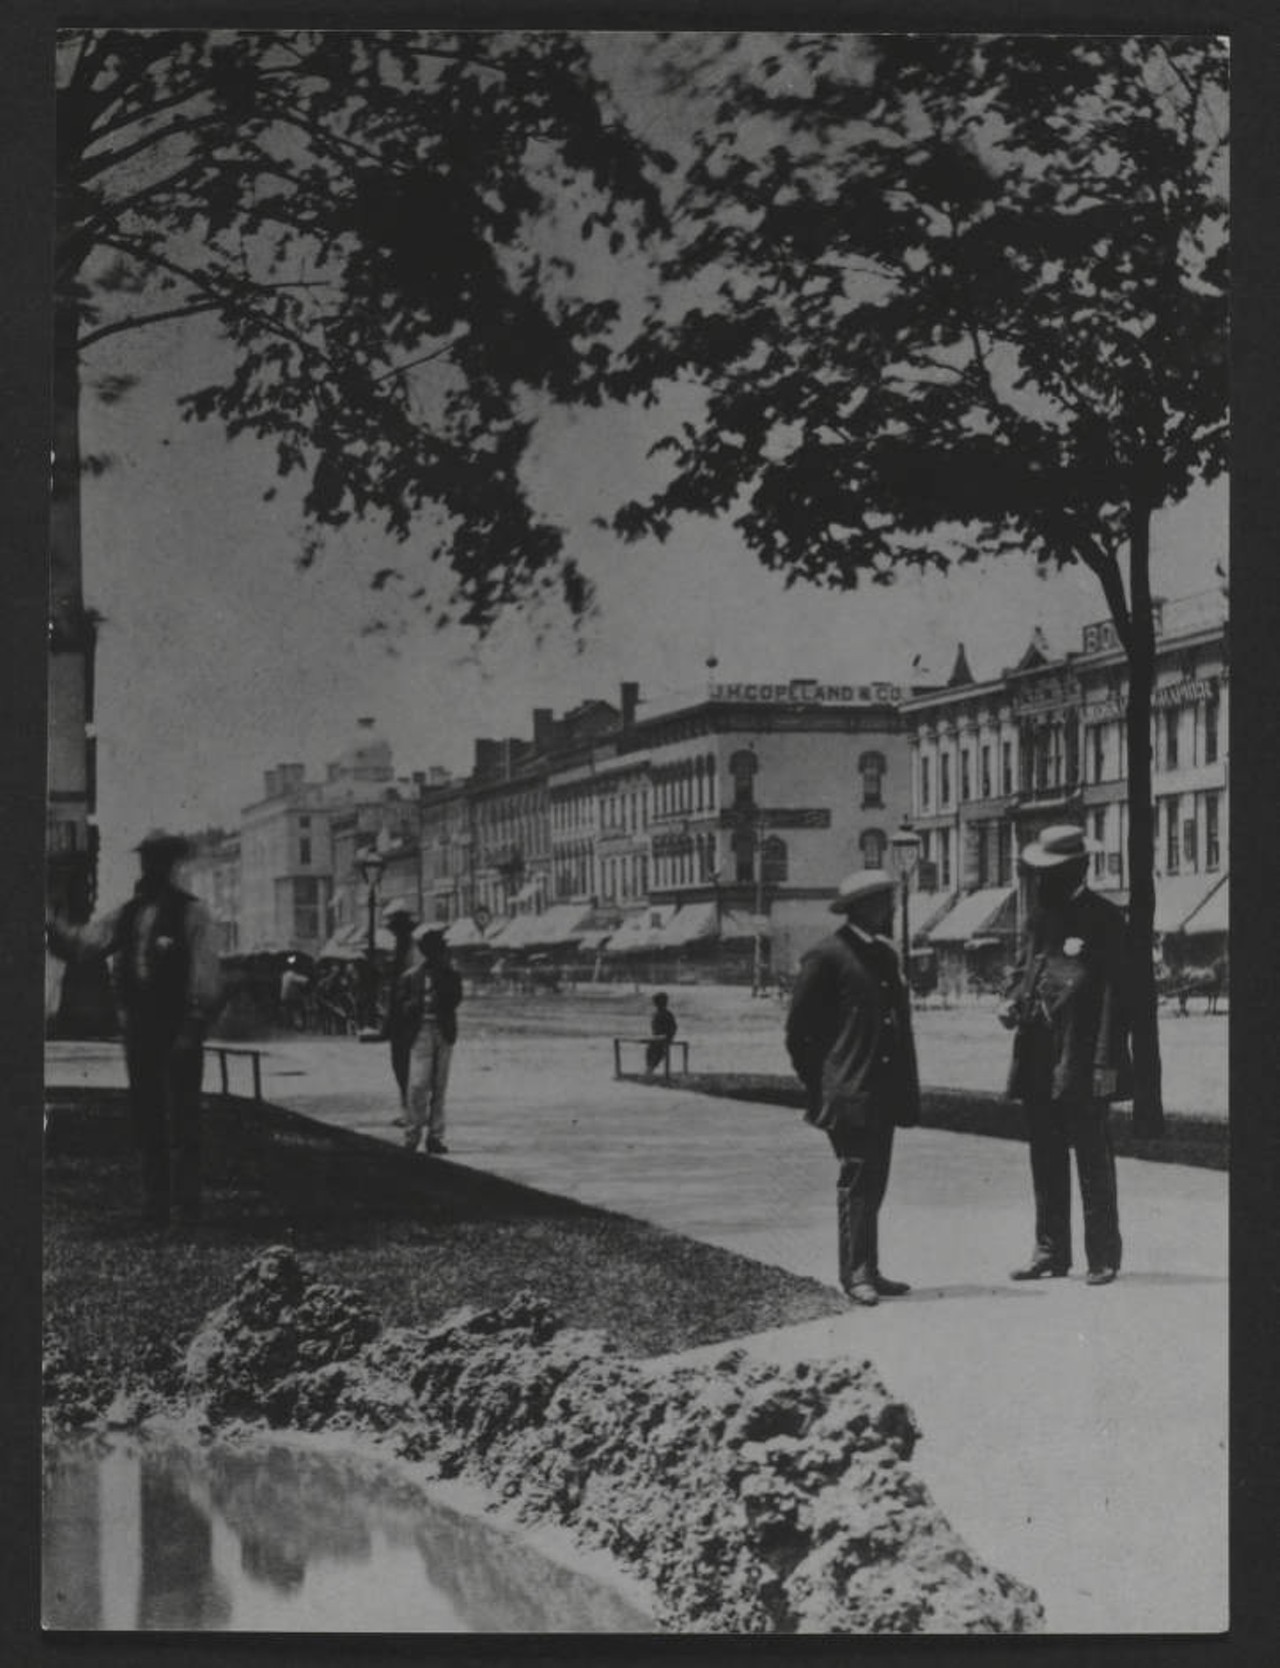 Public Square, 1885